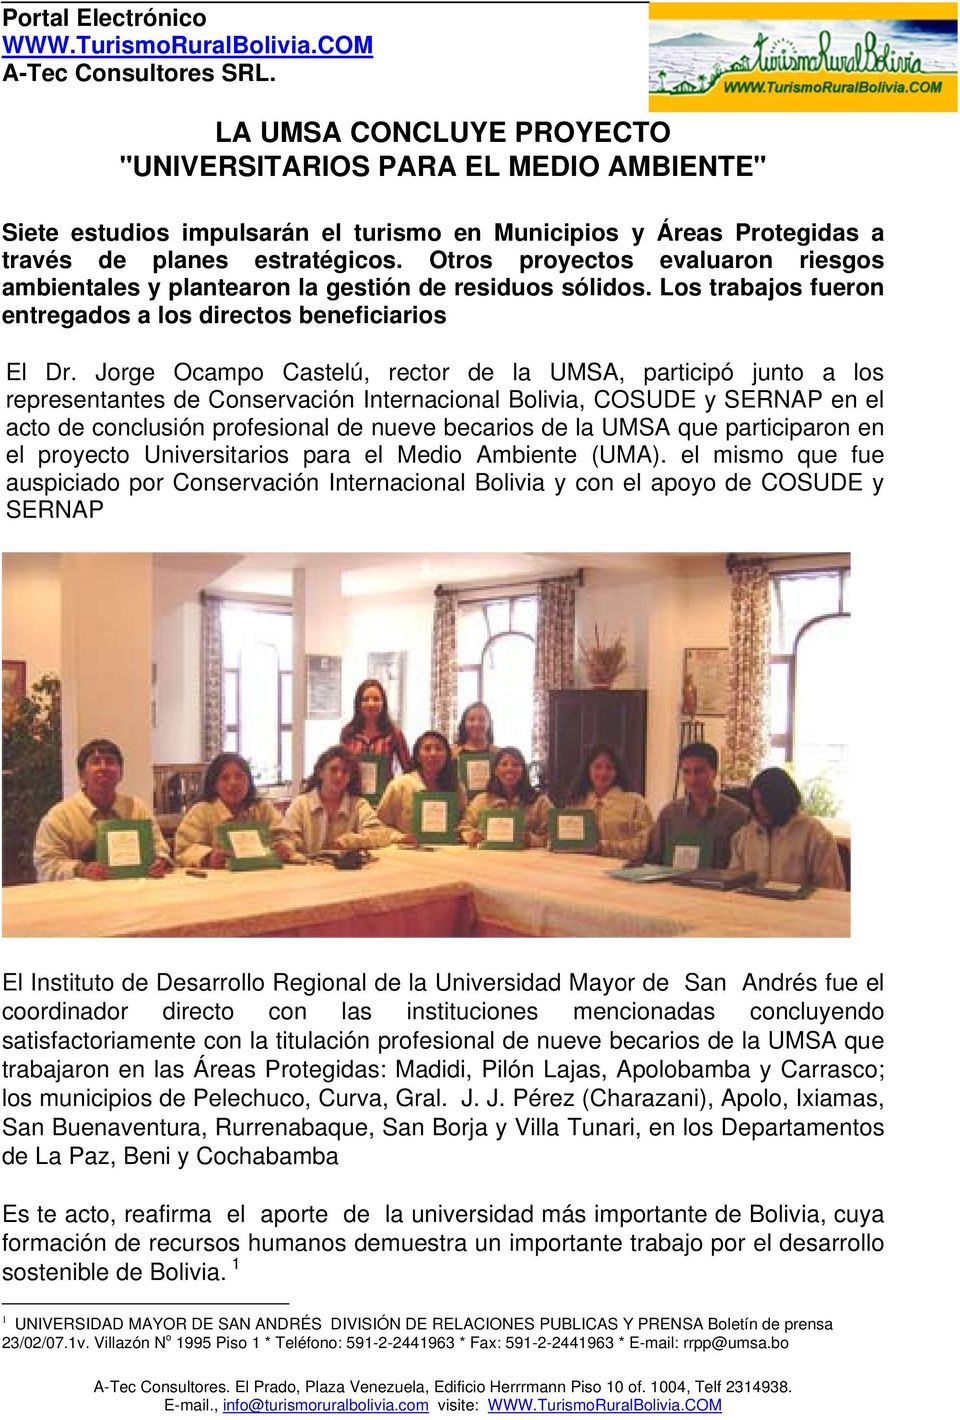 Jorge Ocampo Castelú, rector de la UMSA, participó junto a los representantes de Conservación Internacional Bolivia, COSUDE y SERNAP en el acto de conclusión profesional de nueve becarios de la UMSA